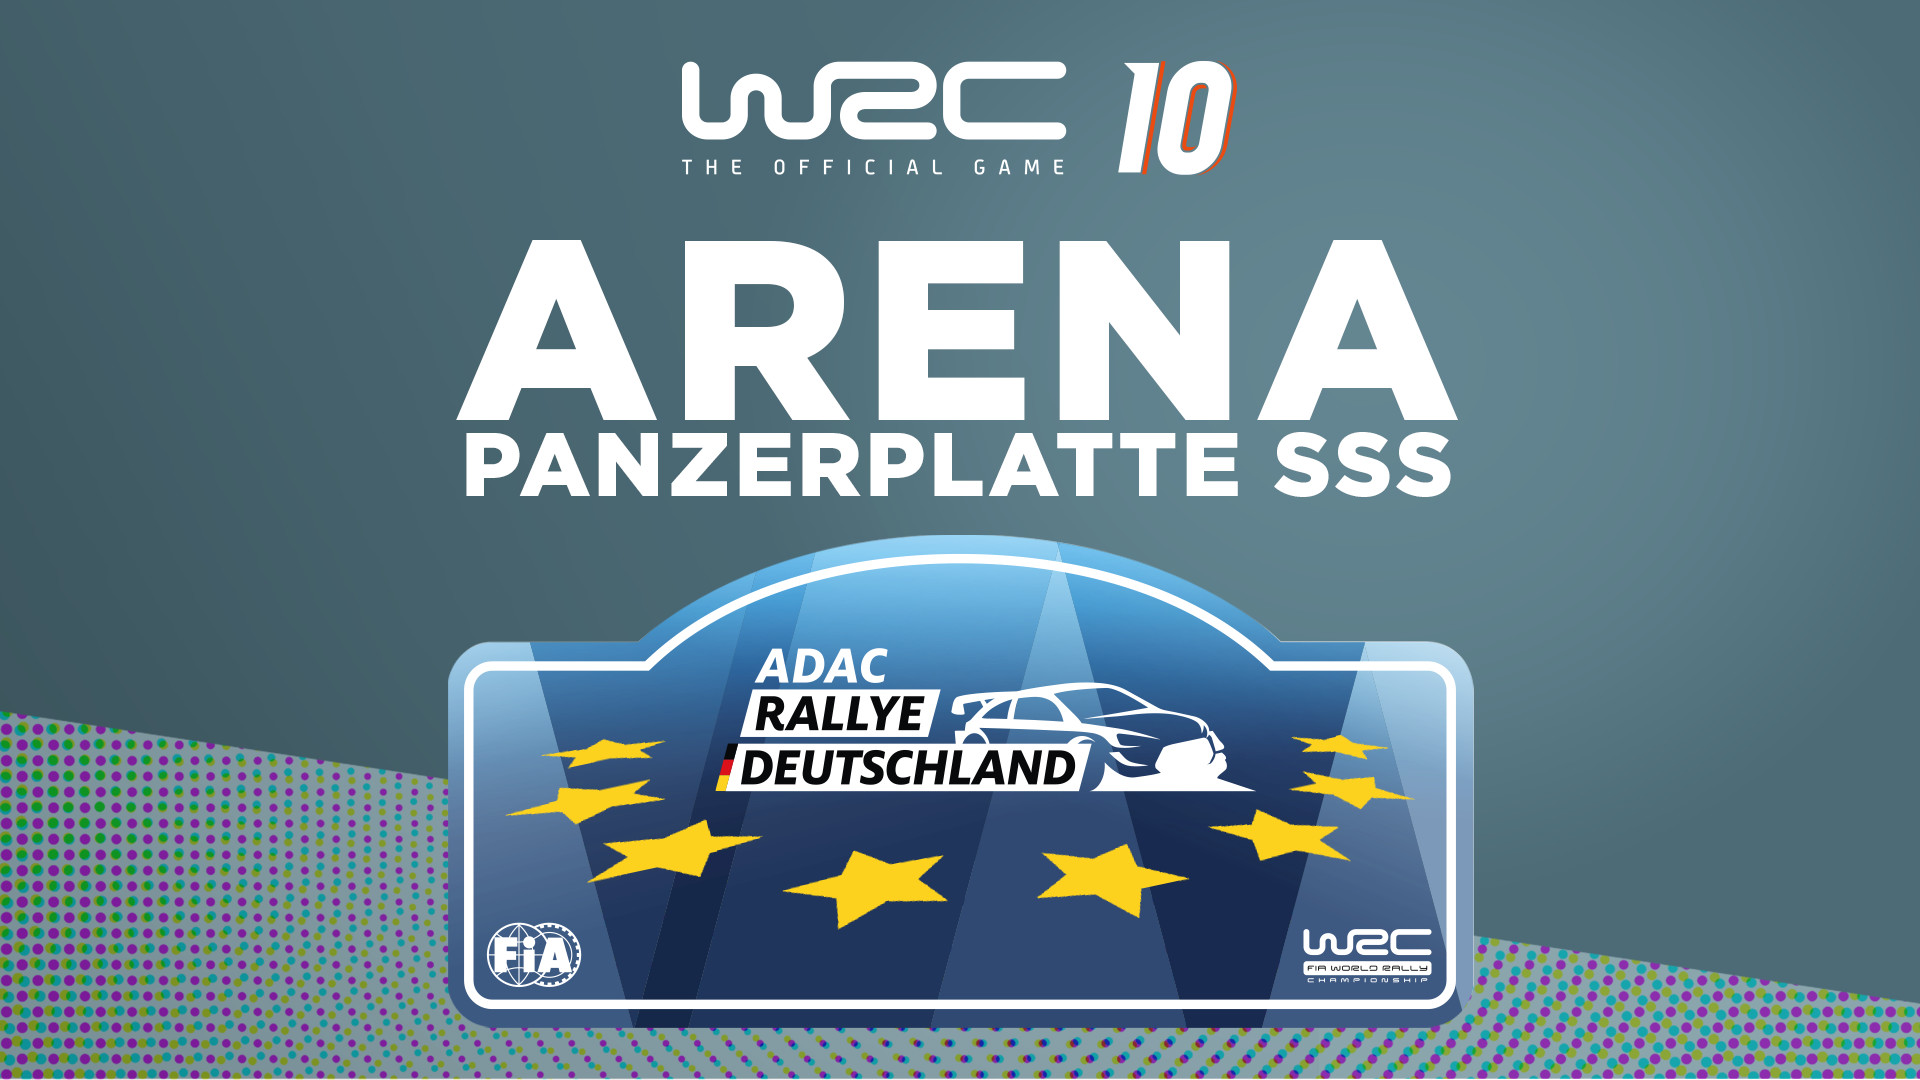 WRC 10 - Arena Panzerplatte SSS DLC Steam CD Key 4.51$